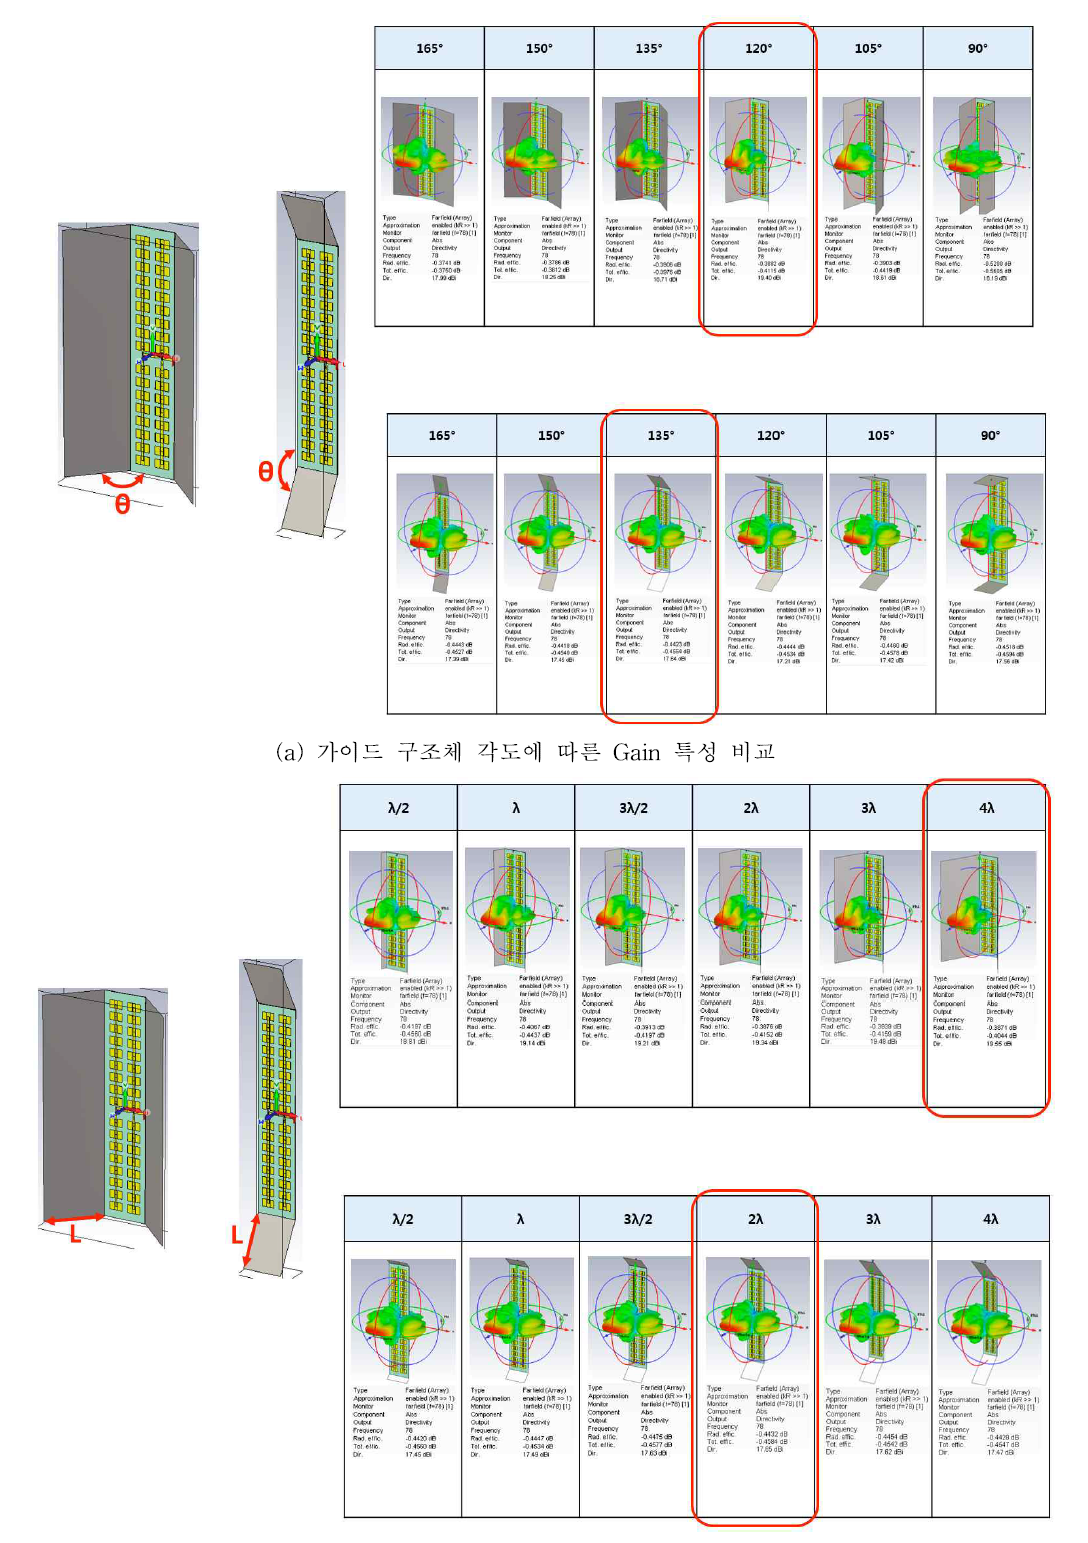 m*n 구조 패치 배열 안테나의 배열 수에 따른 시뮬레이션 결과